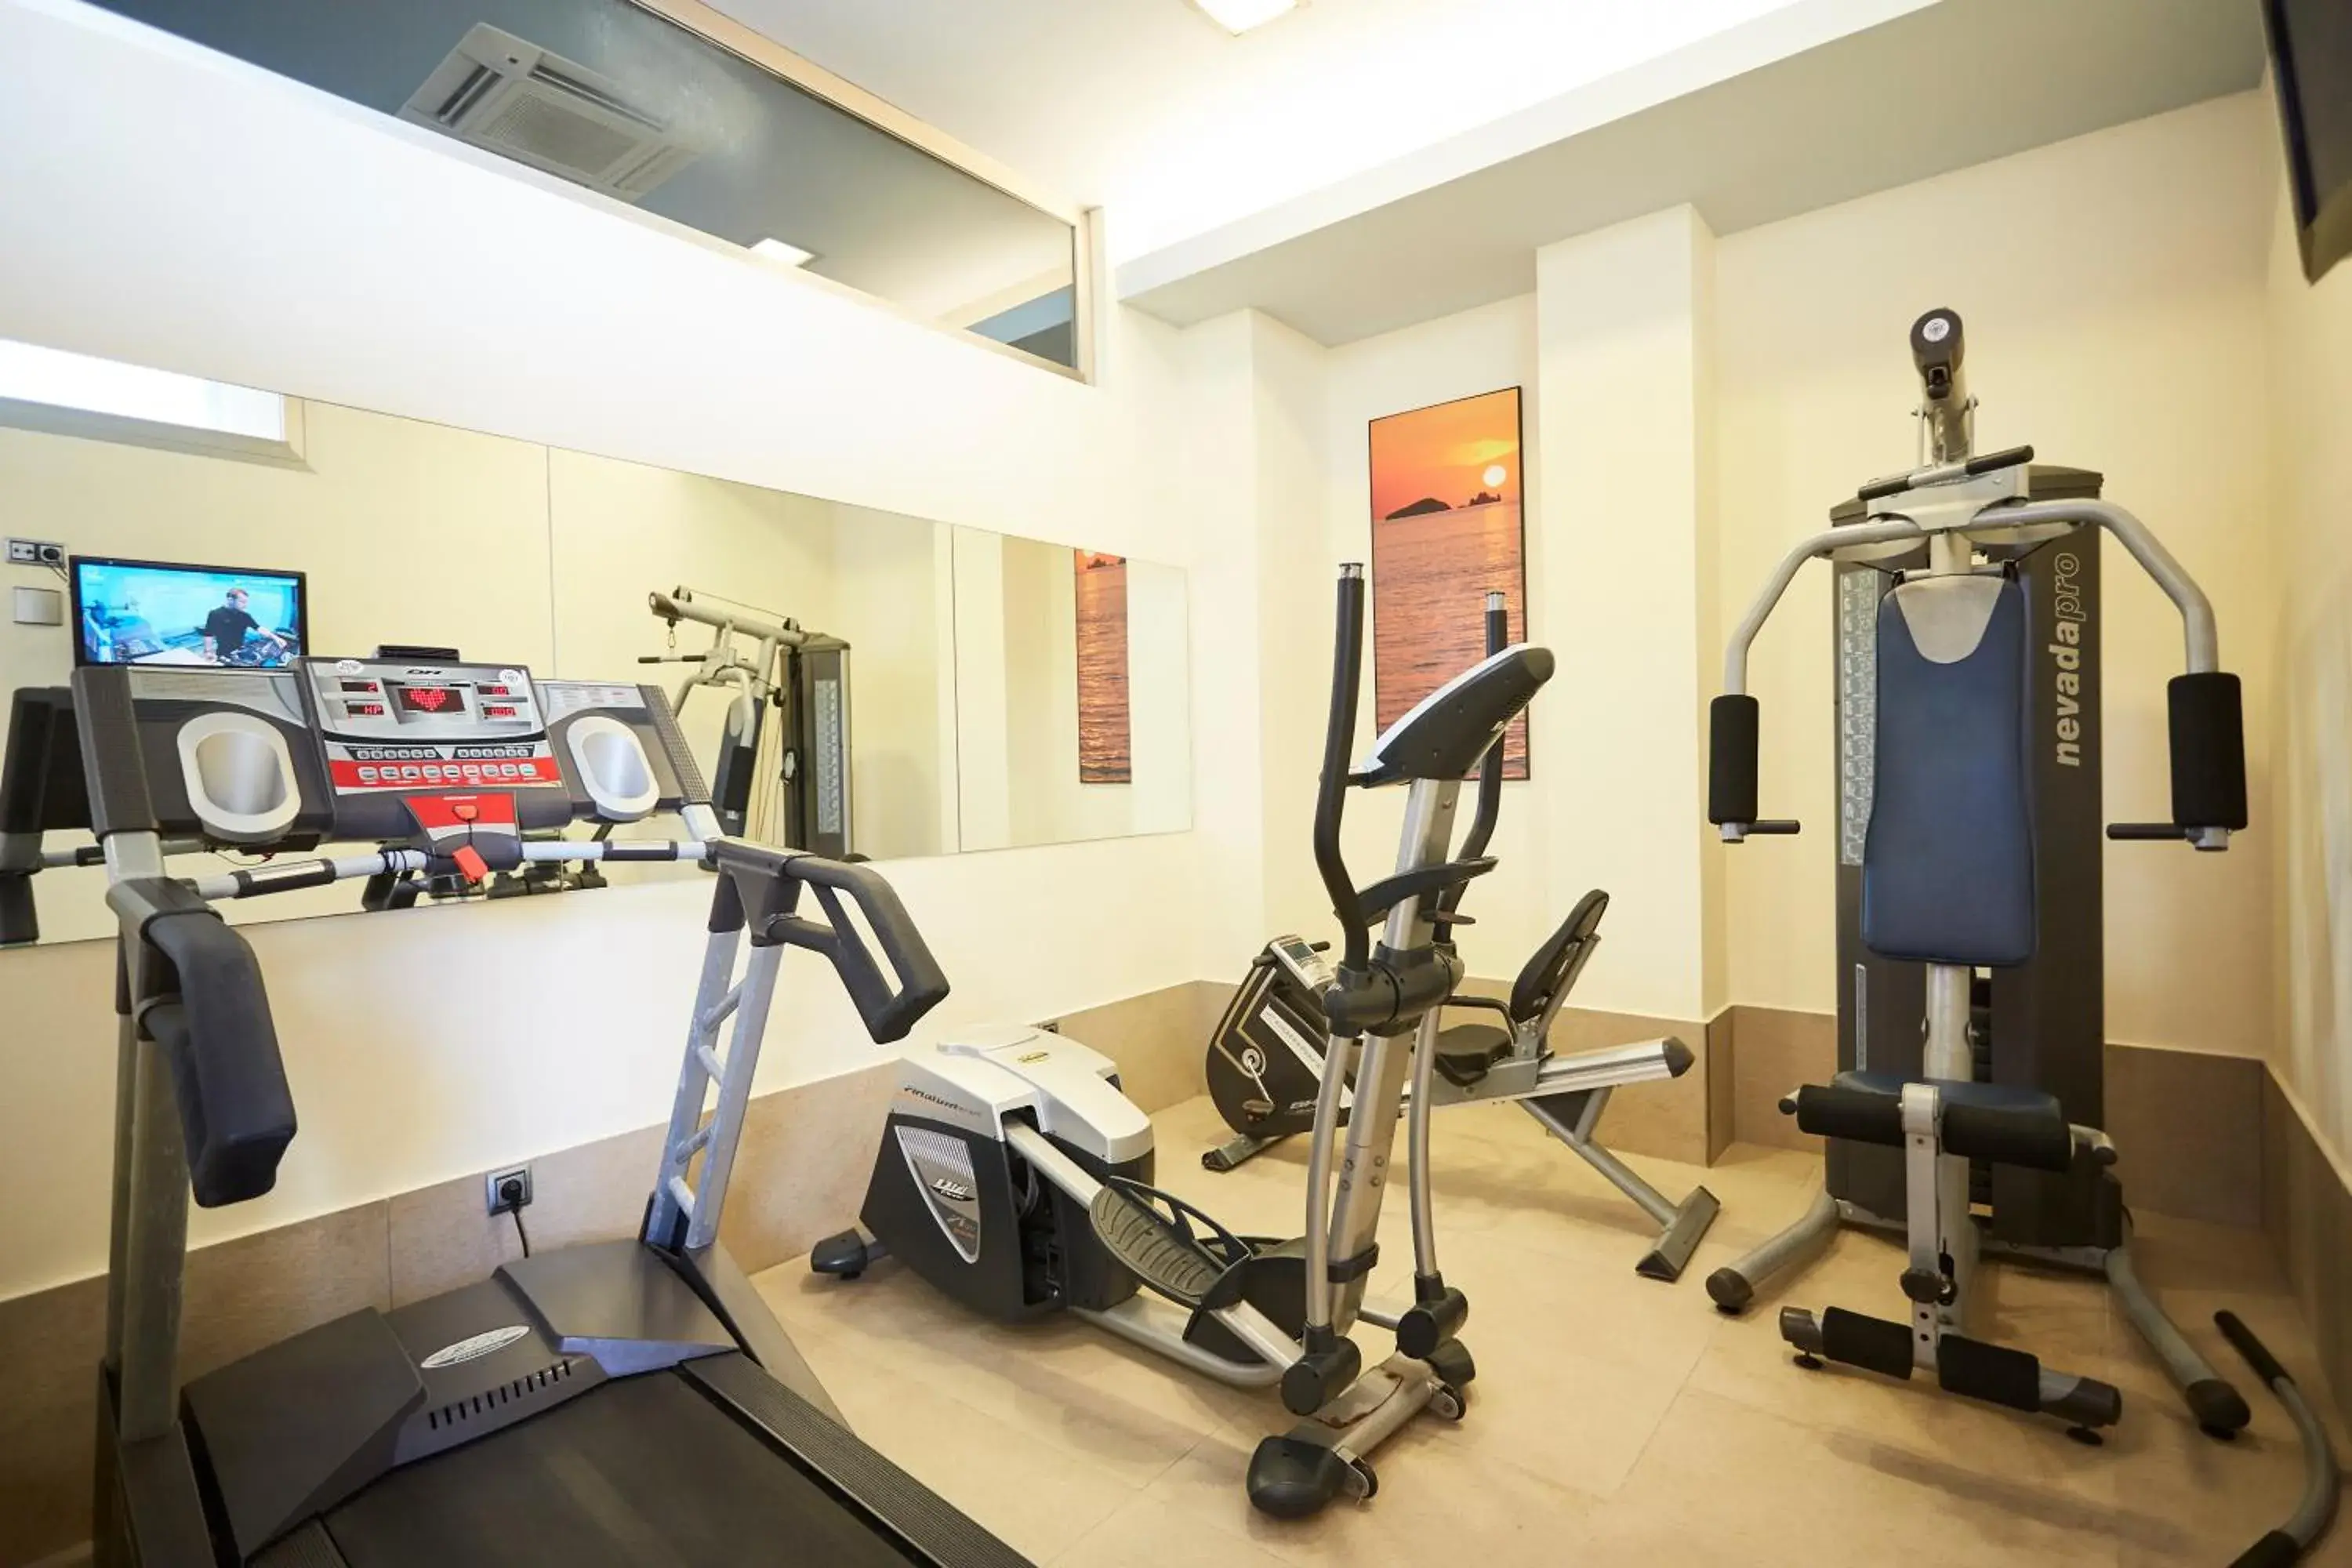 Fitness centre/facilities, Fitness Center/Facilities in Invisa Hotel La Cala